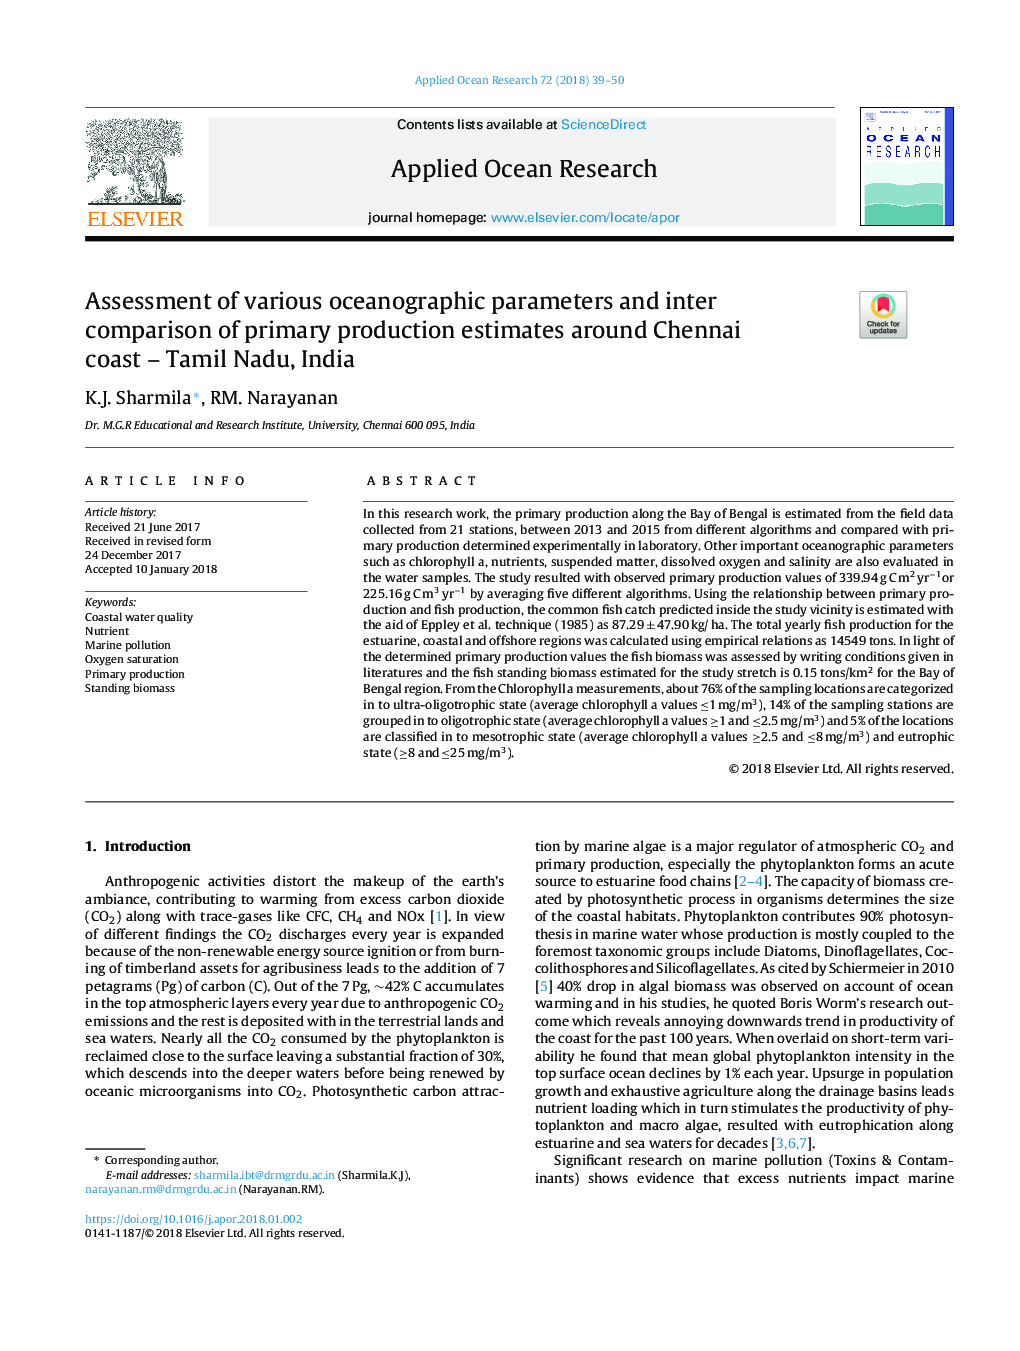 ارزیابی پارامترهای مختلف اقیانوس شناختی و مقایسه بین تولید اولیه در اطراف سواحل چنای - تامیل نادو، هند 